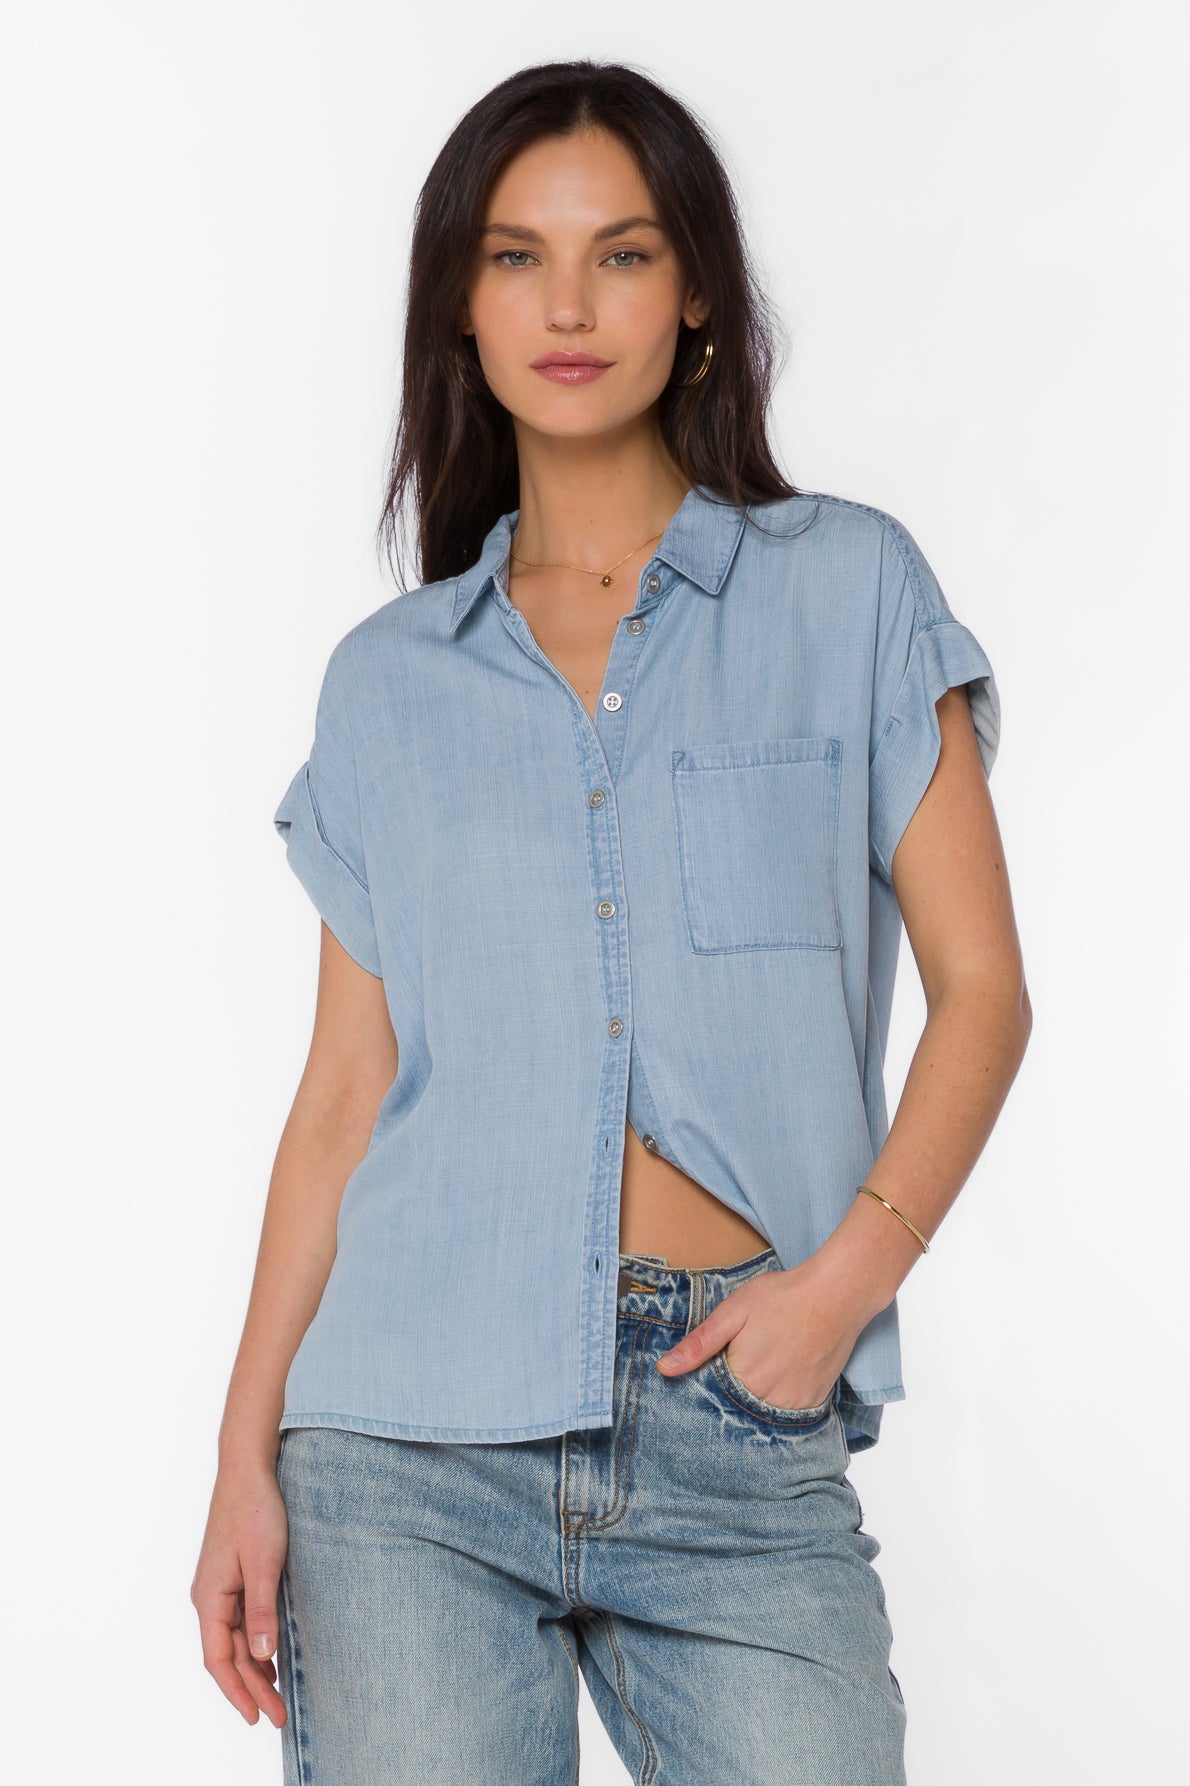 Edison Greyson Blue Shirt - Tops - Velvet Heart Clothing